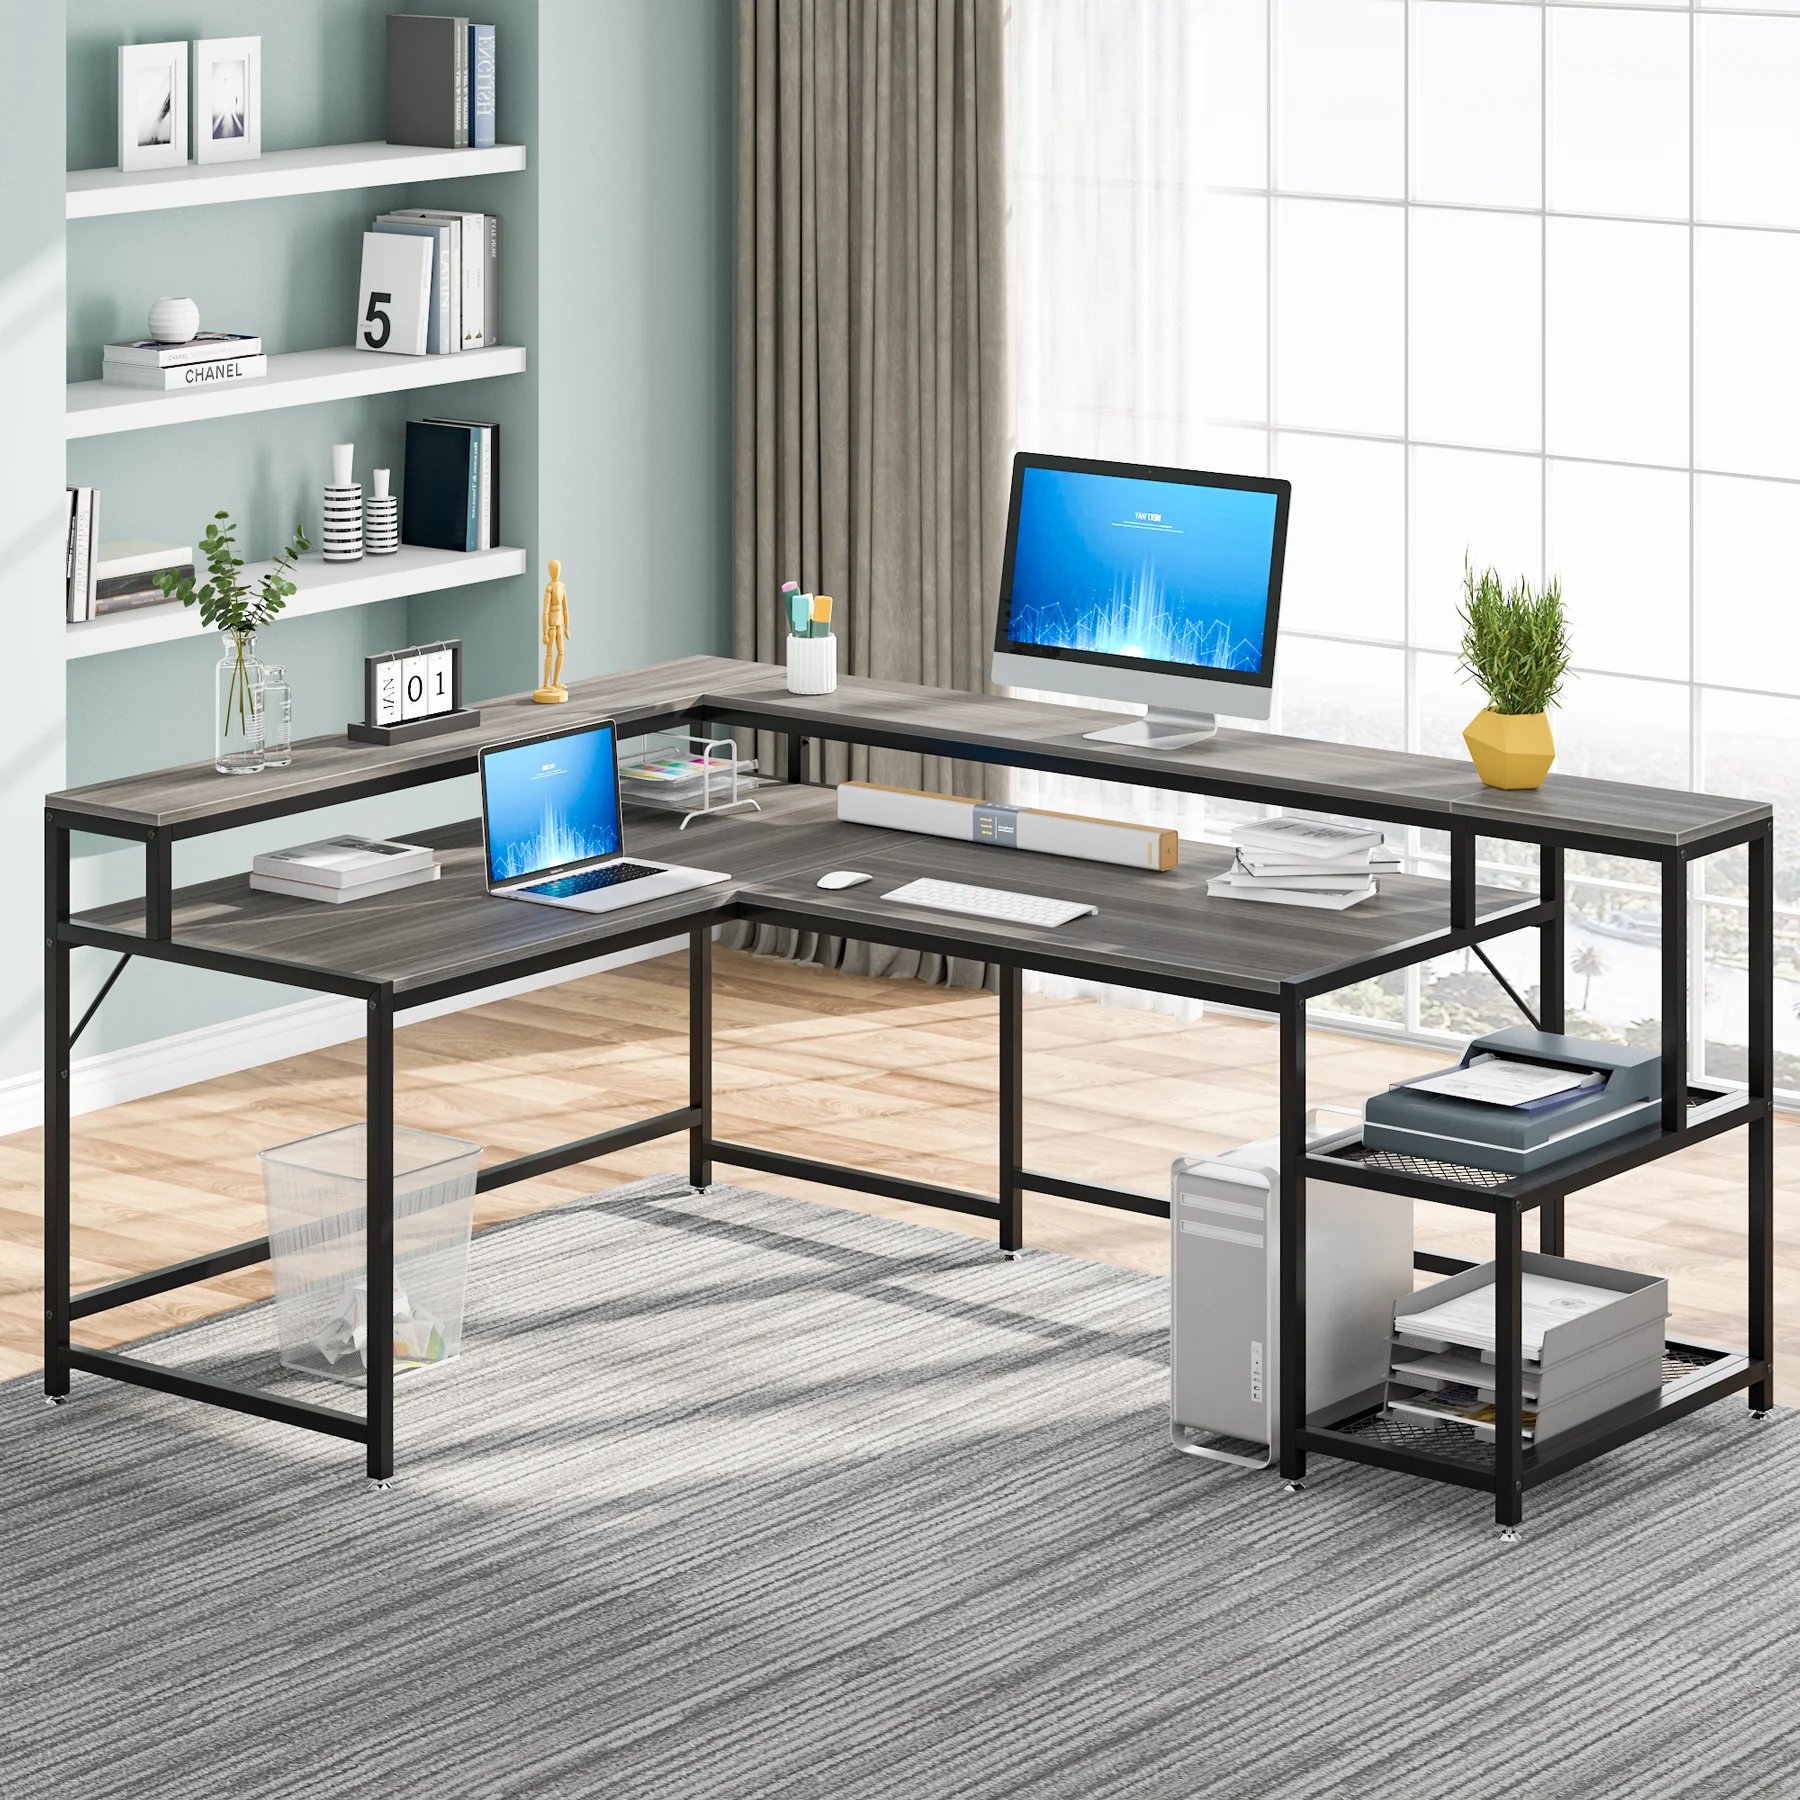 Manufacturer Office Furniture Corner Study Desk Home Made Computer Desk